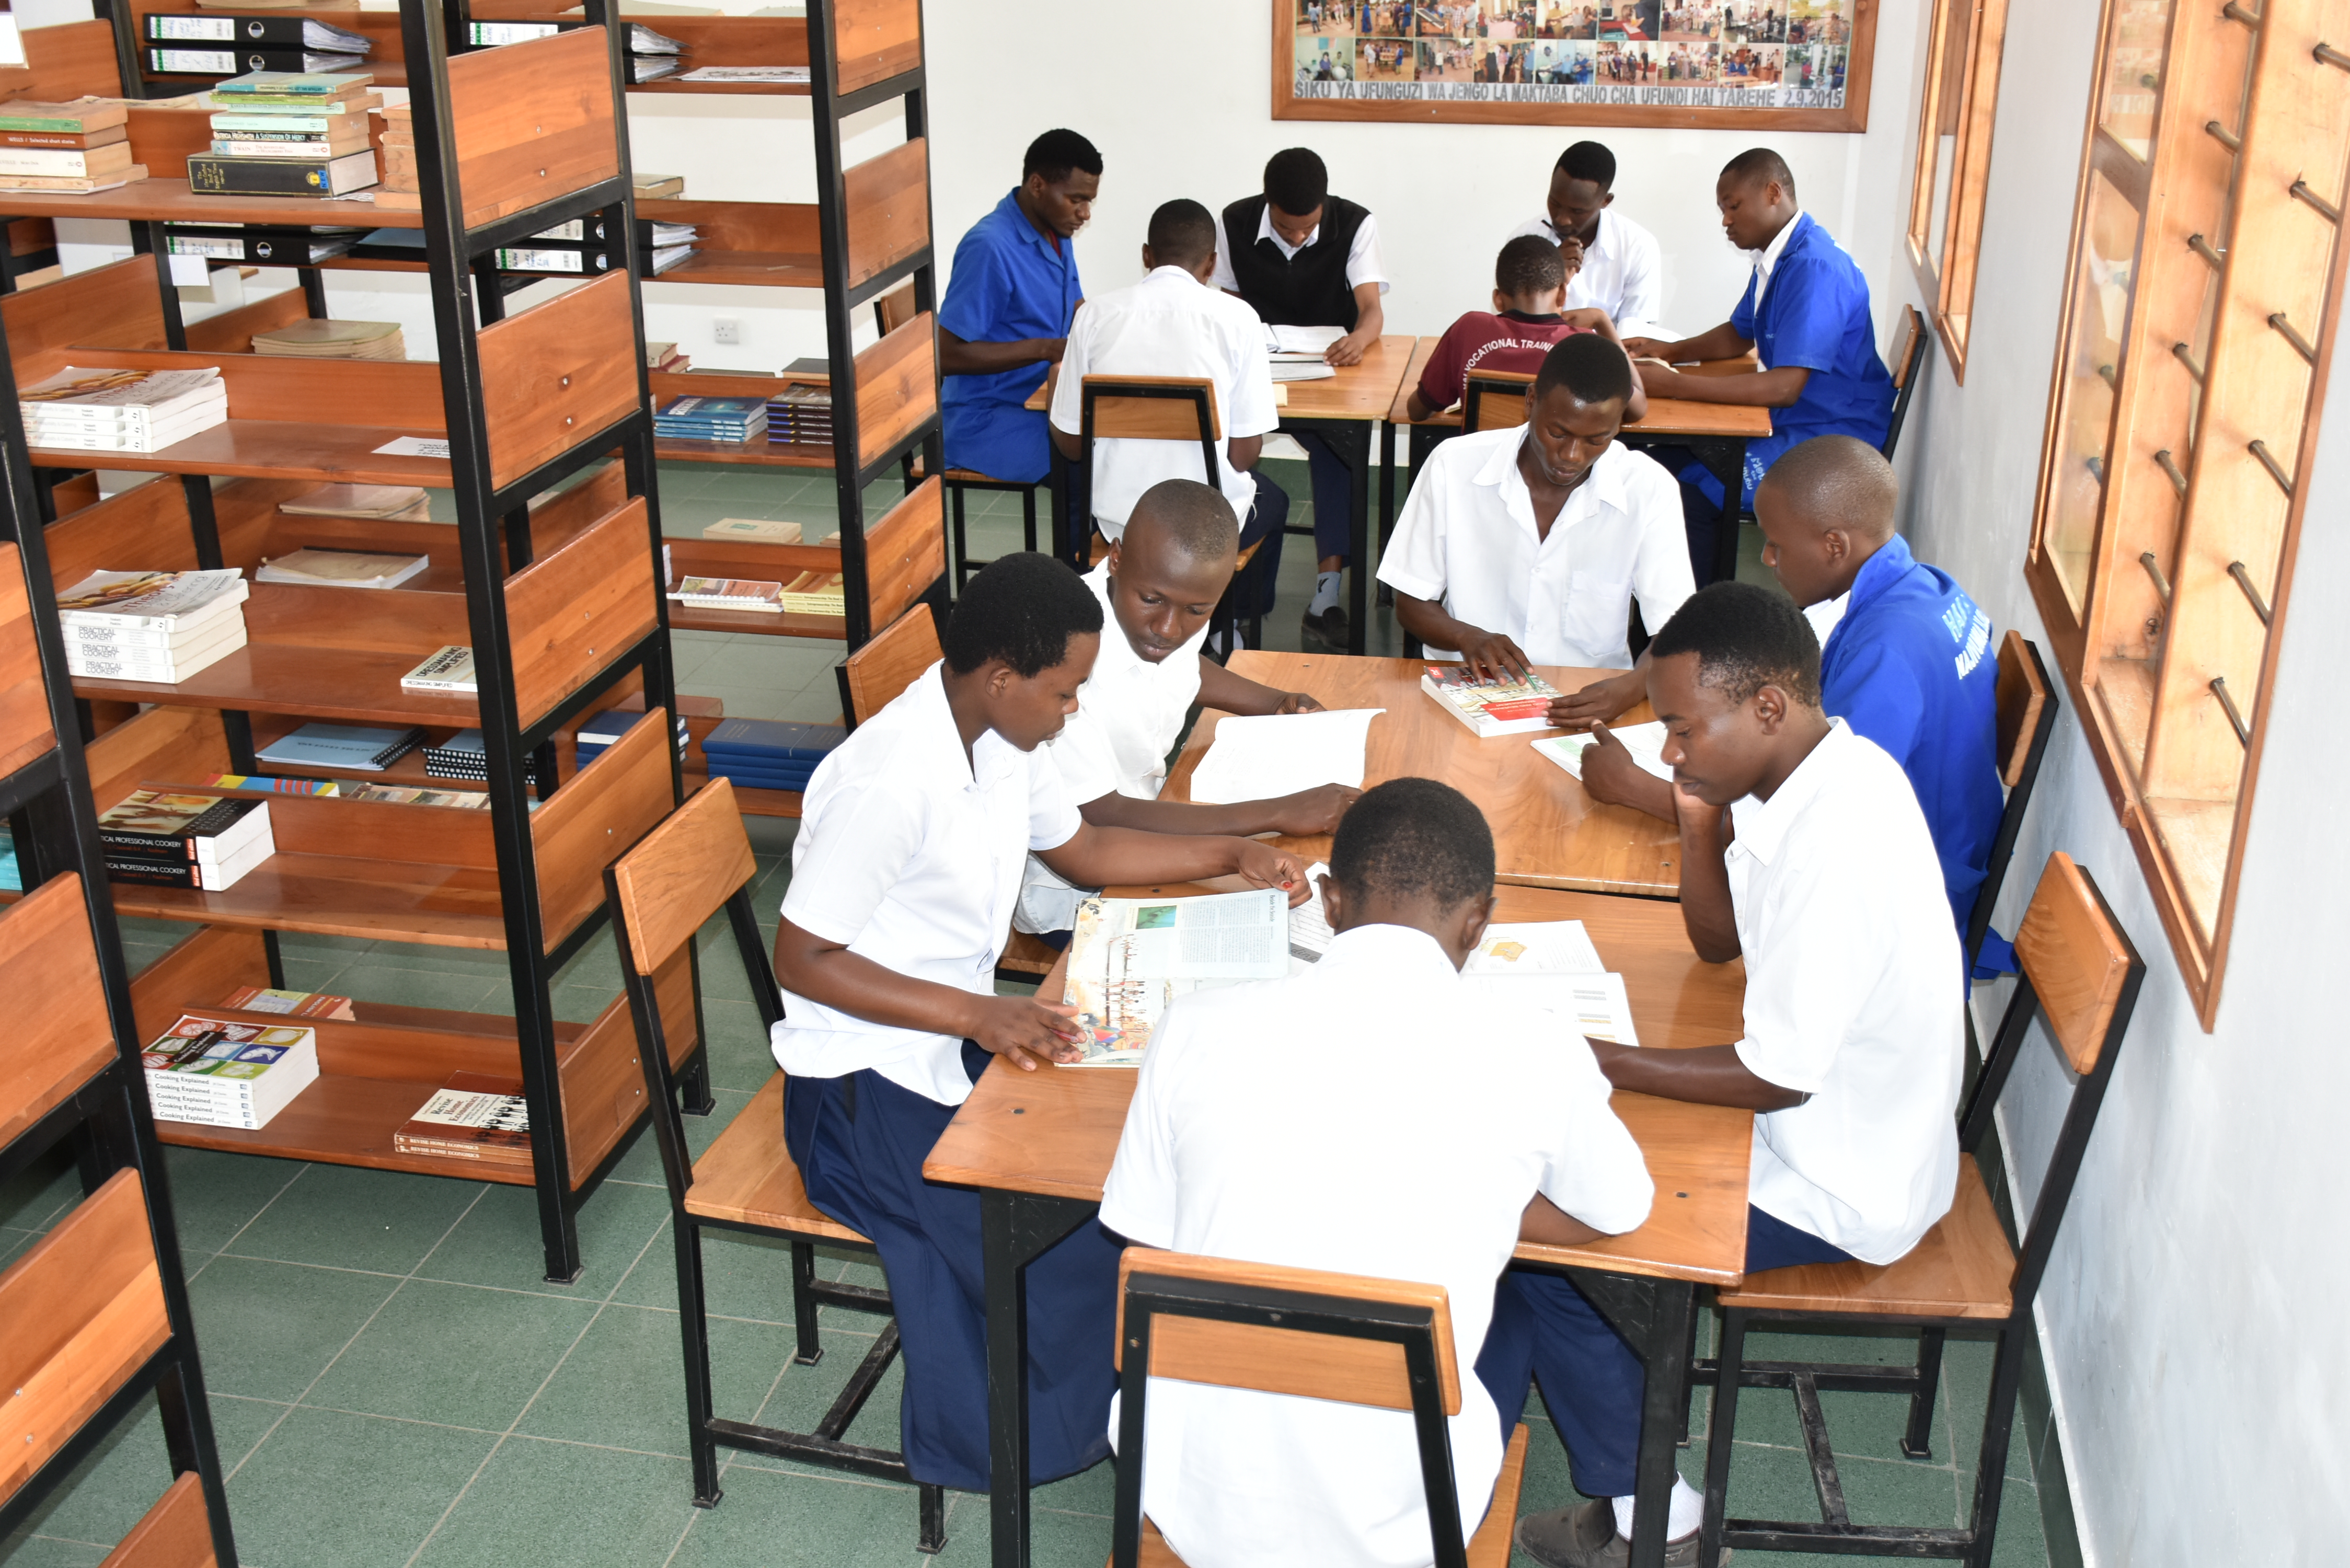 Schüler beim Lernen_ Handwerkliche Schule in Tansania Hai Gegend.